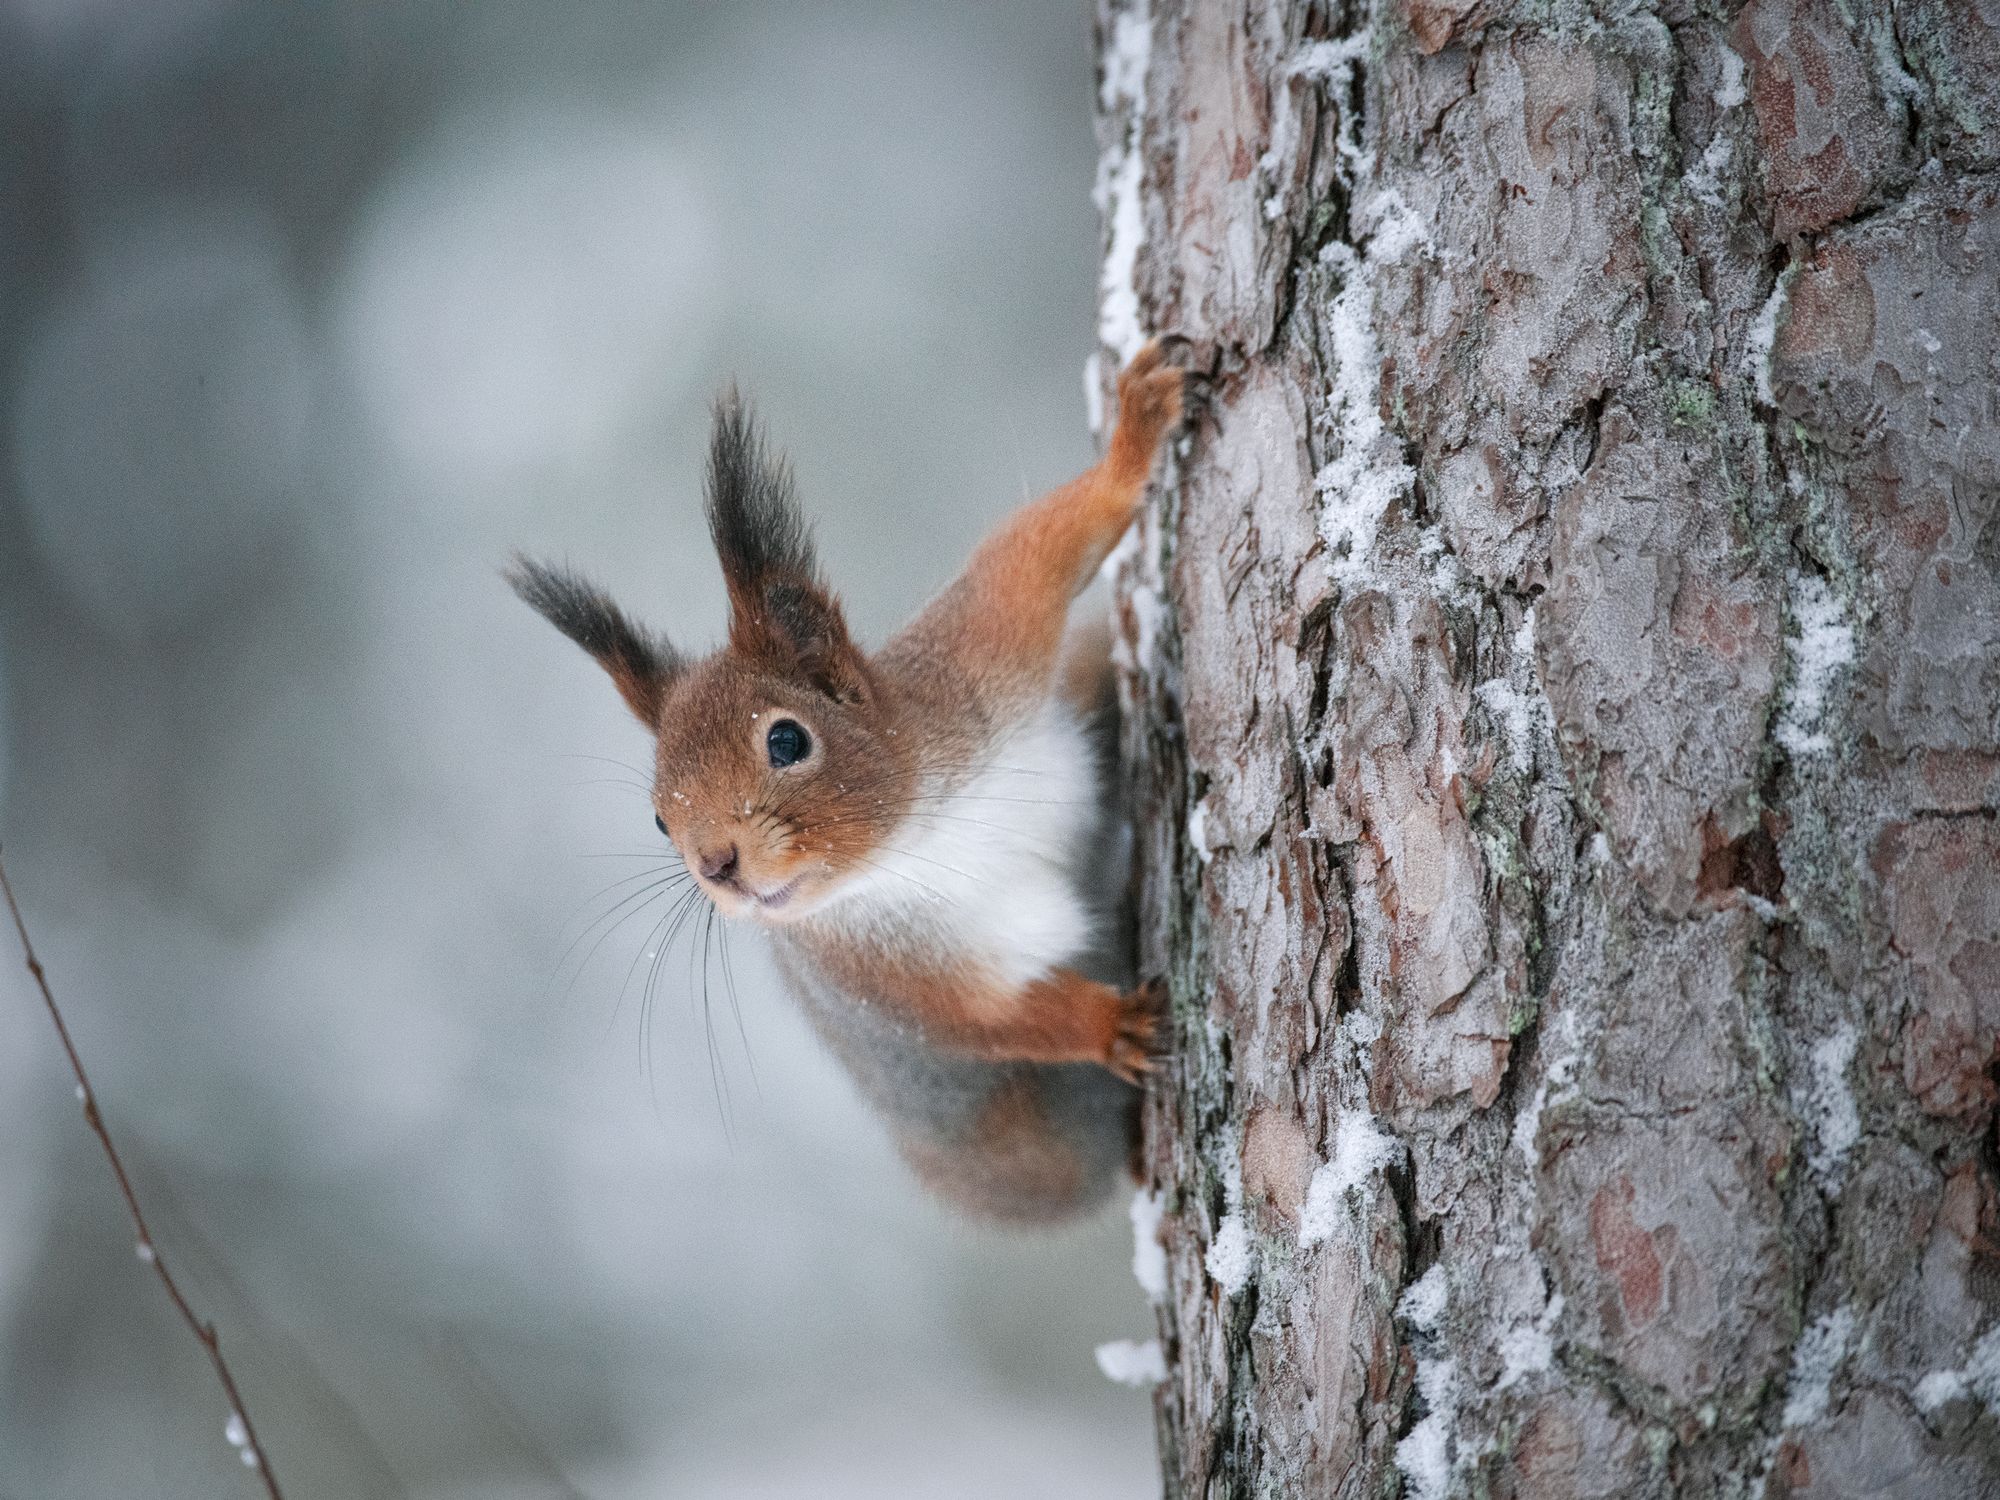  Pihassa asustavat oravat hyödyntävät ruokintapaikan antimia siinä missä linnutkin. Kuva: Heikki Willamo